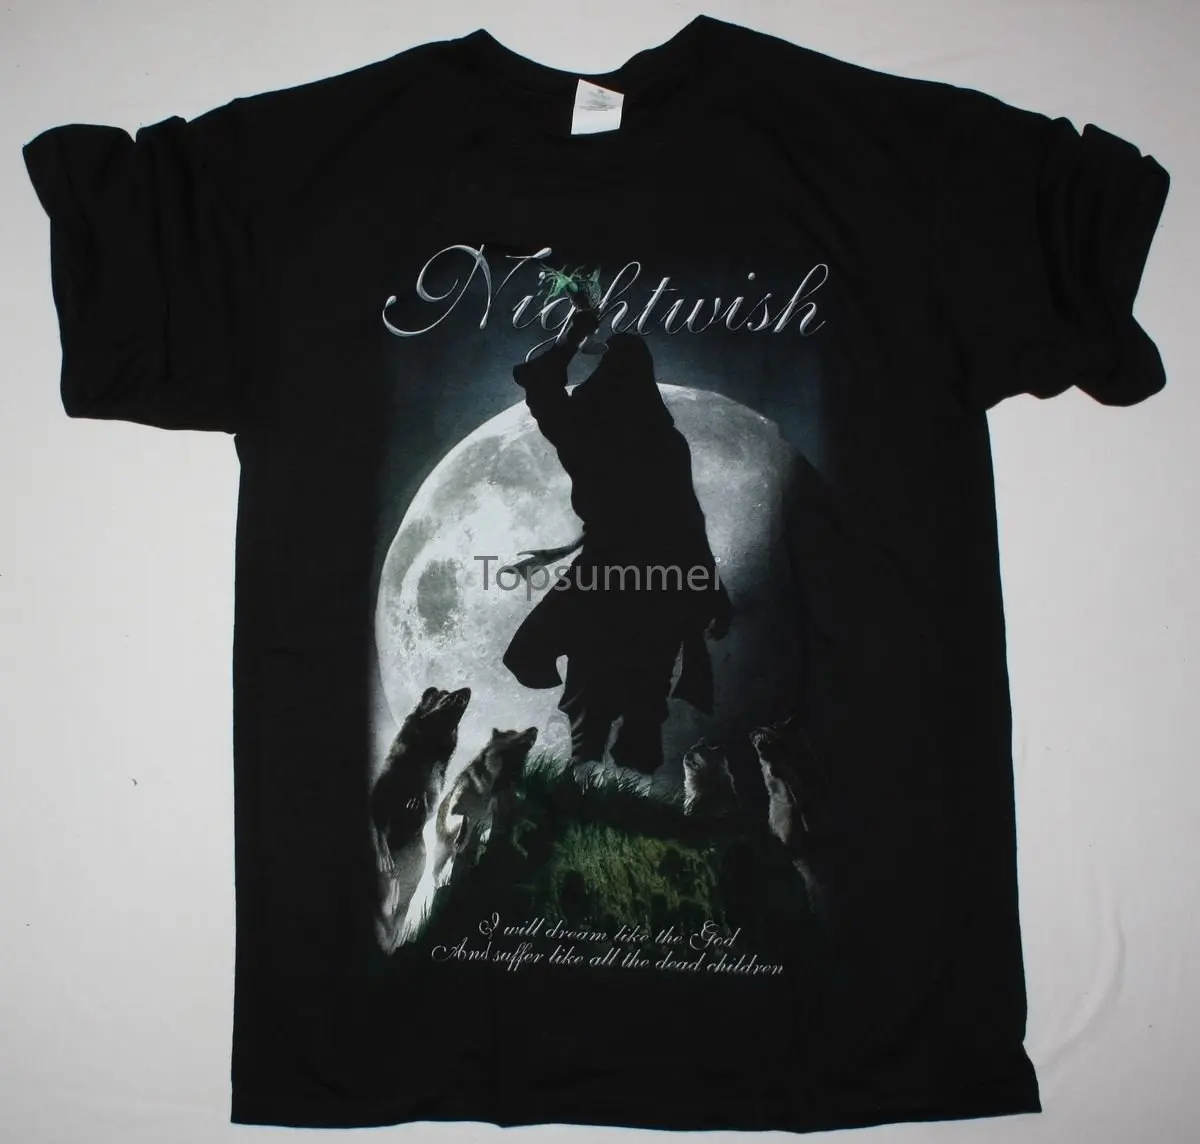 

Nightwish Seven Days To The Wolves Black T Shirt Within Temptation Tarja Turunen 100% Cotton Tee Shirt, Tops Wholesale Tee